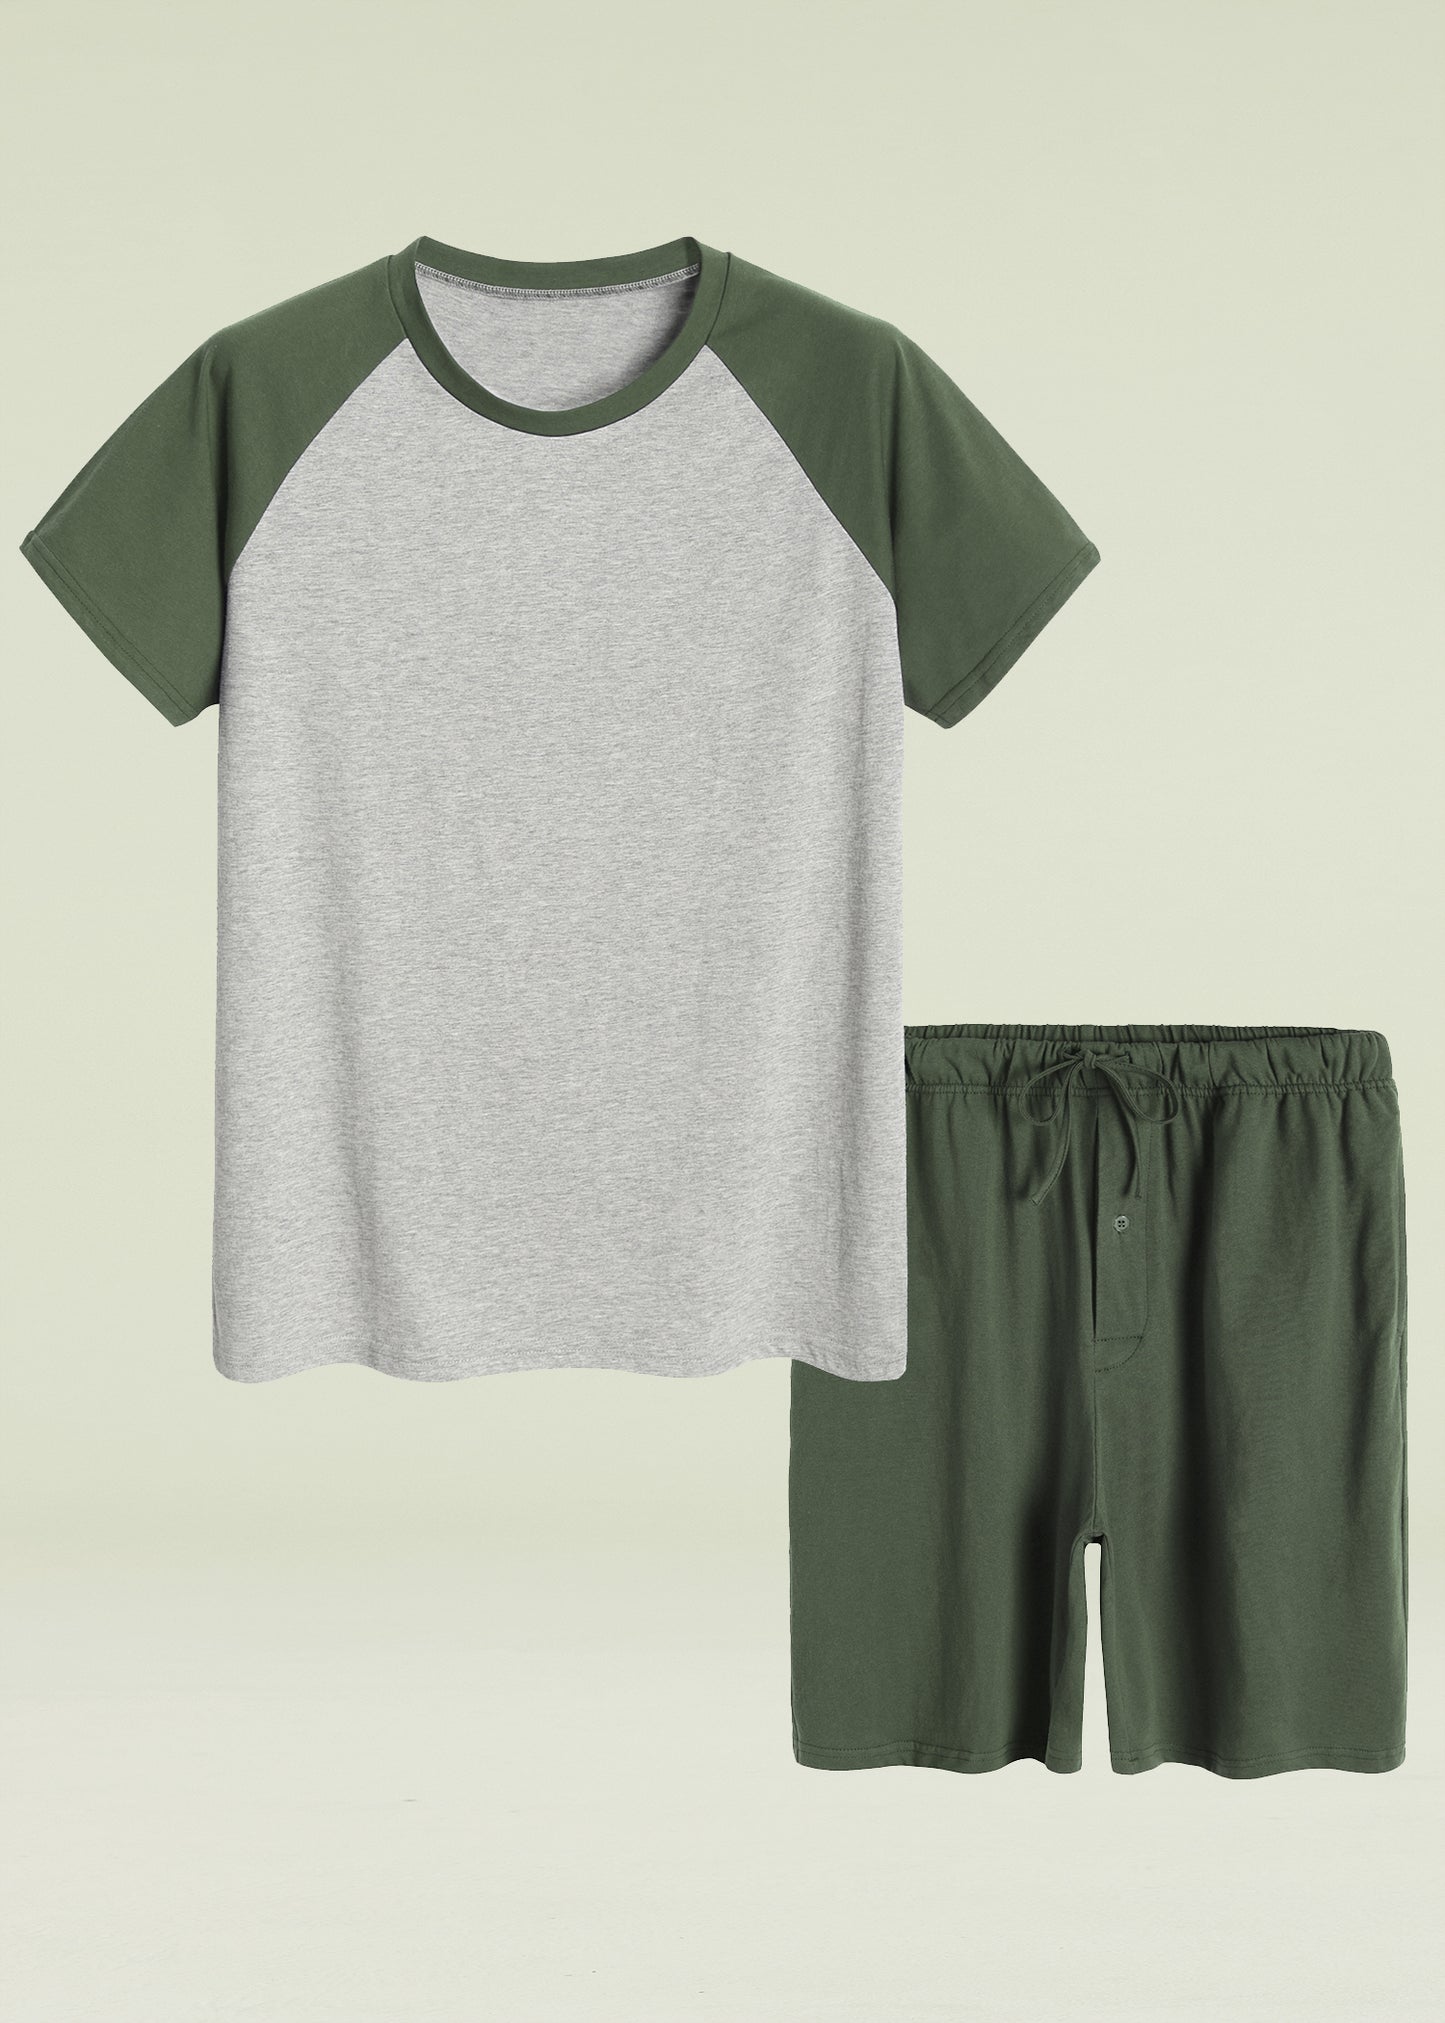 Men's Raglan Shirt and Shorts Pajamas Set with Pockets